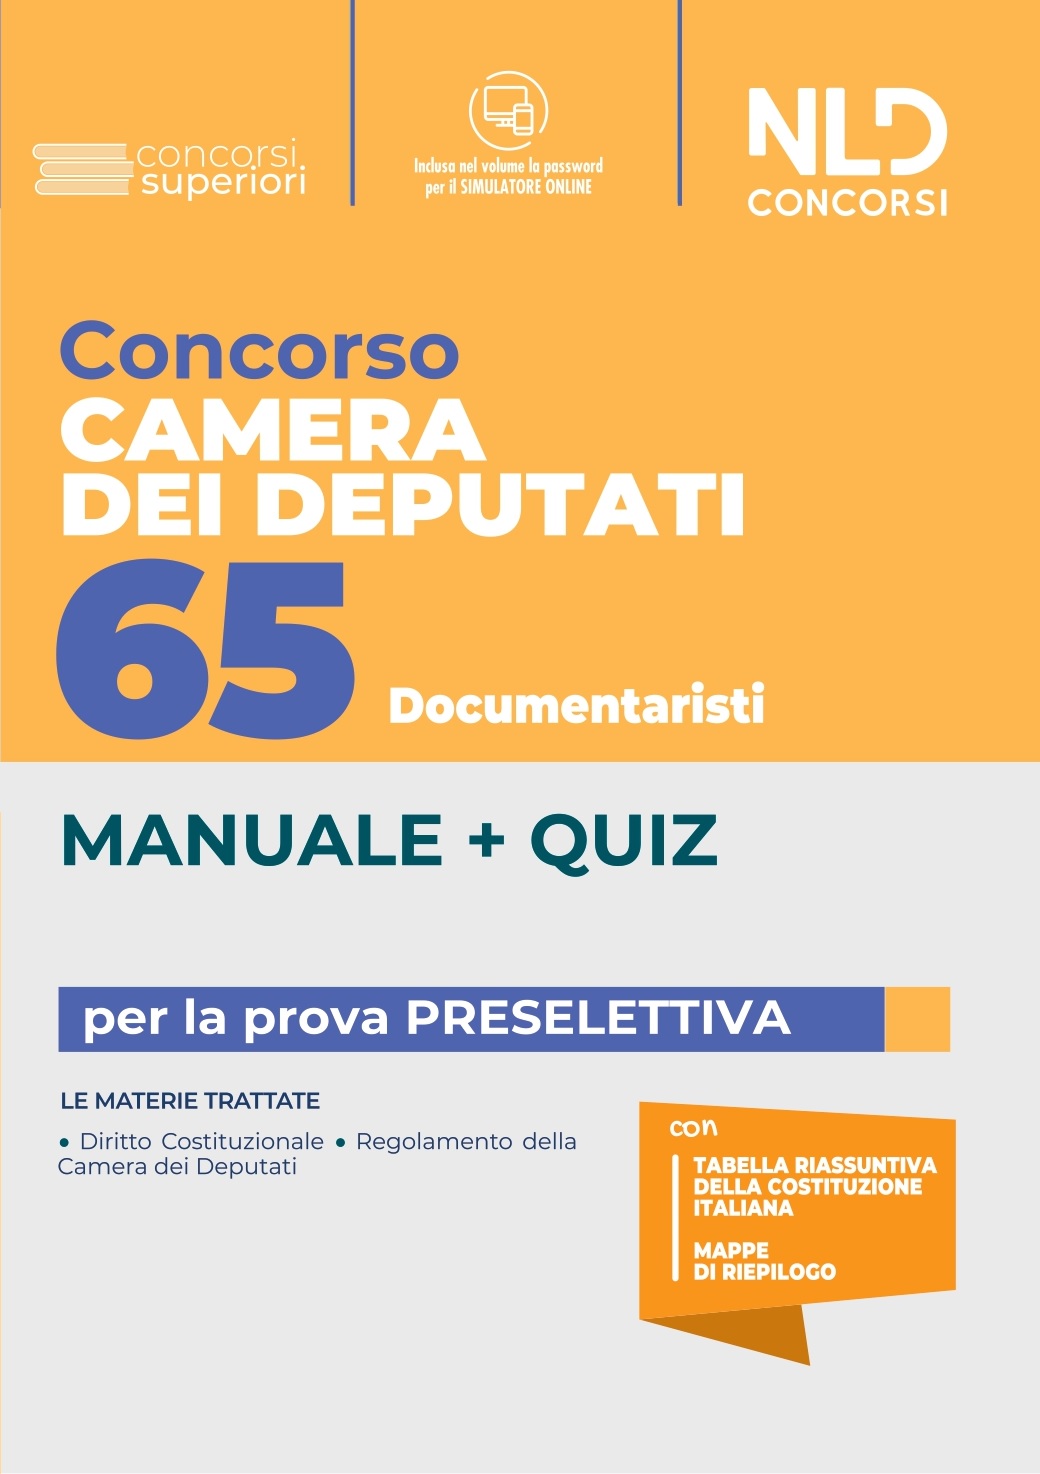 Concorso 65 Documentaristi Camera Dei Deputati. Manuale + Quiz Per La Prova Preselettiva 2022